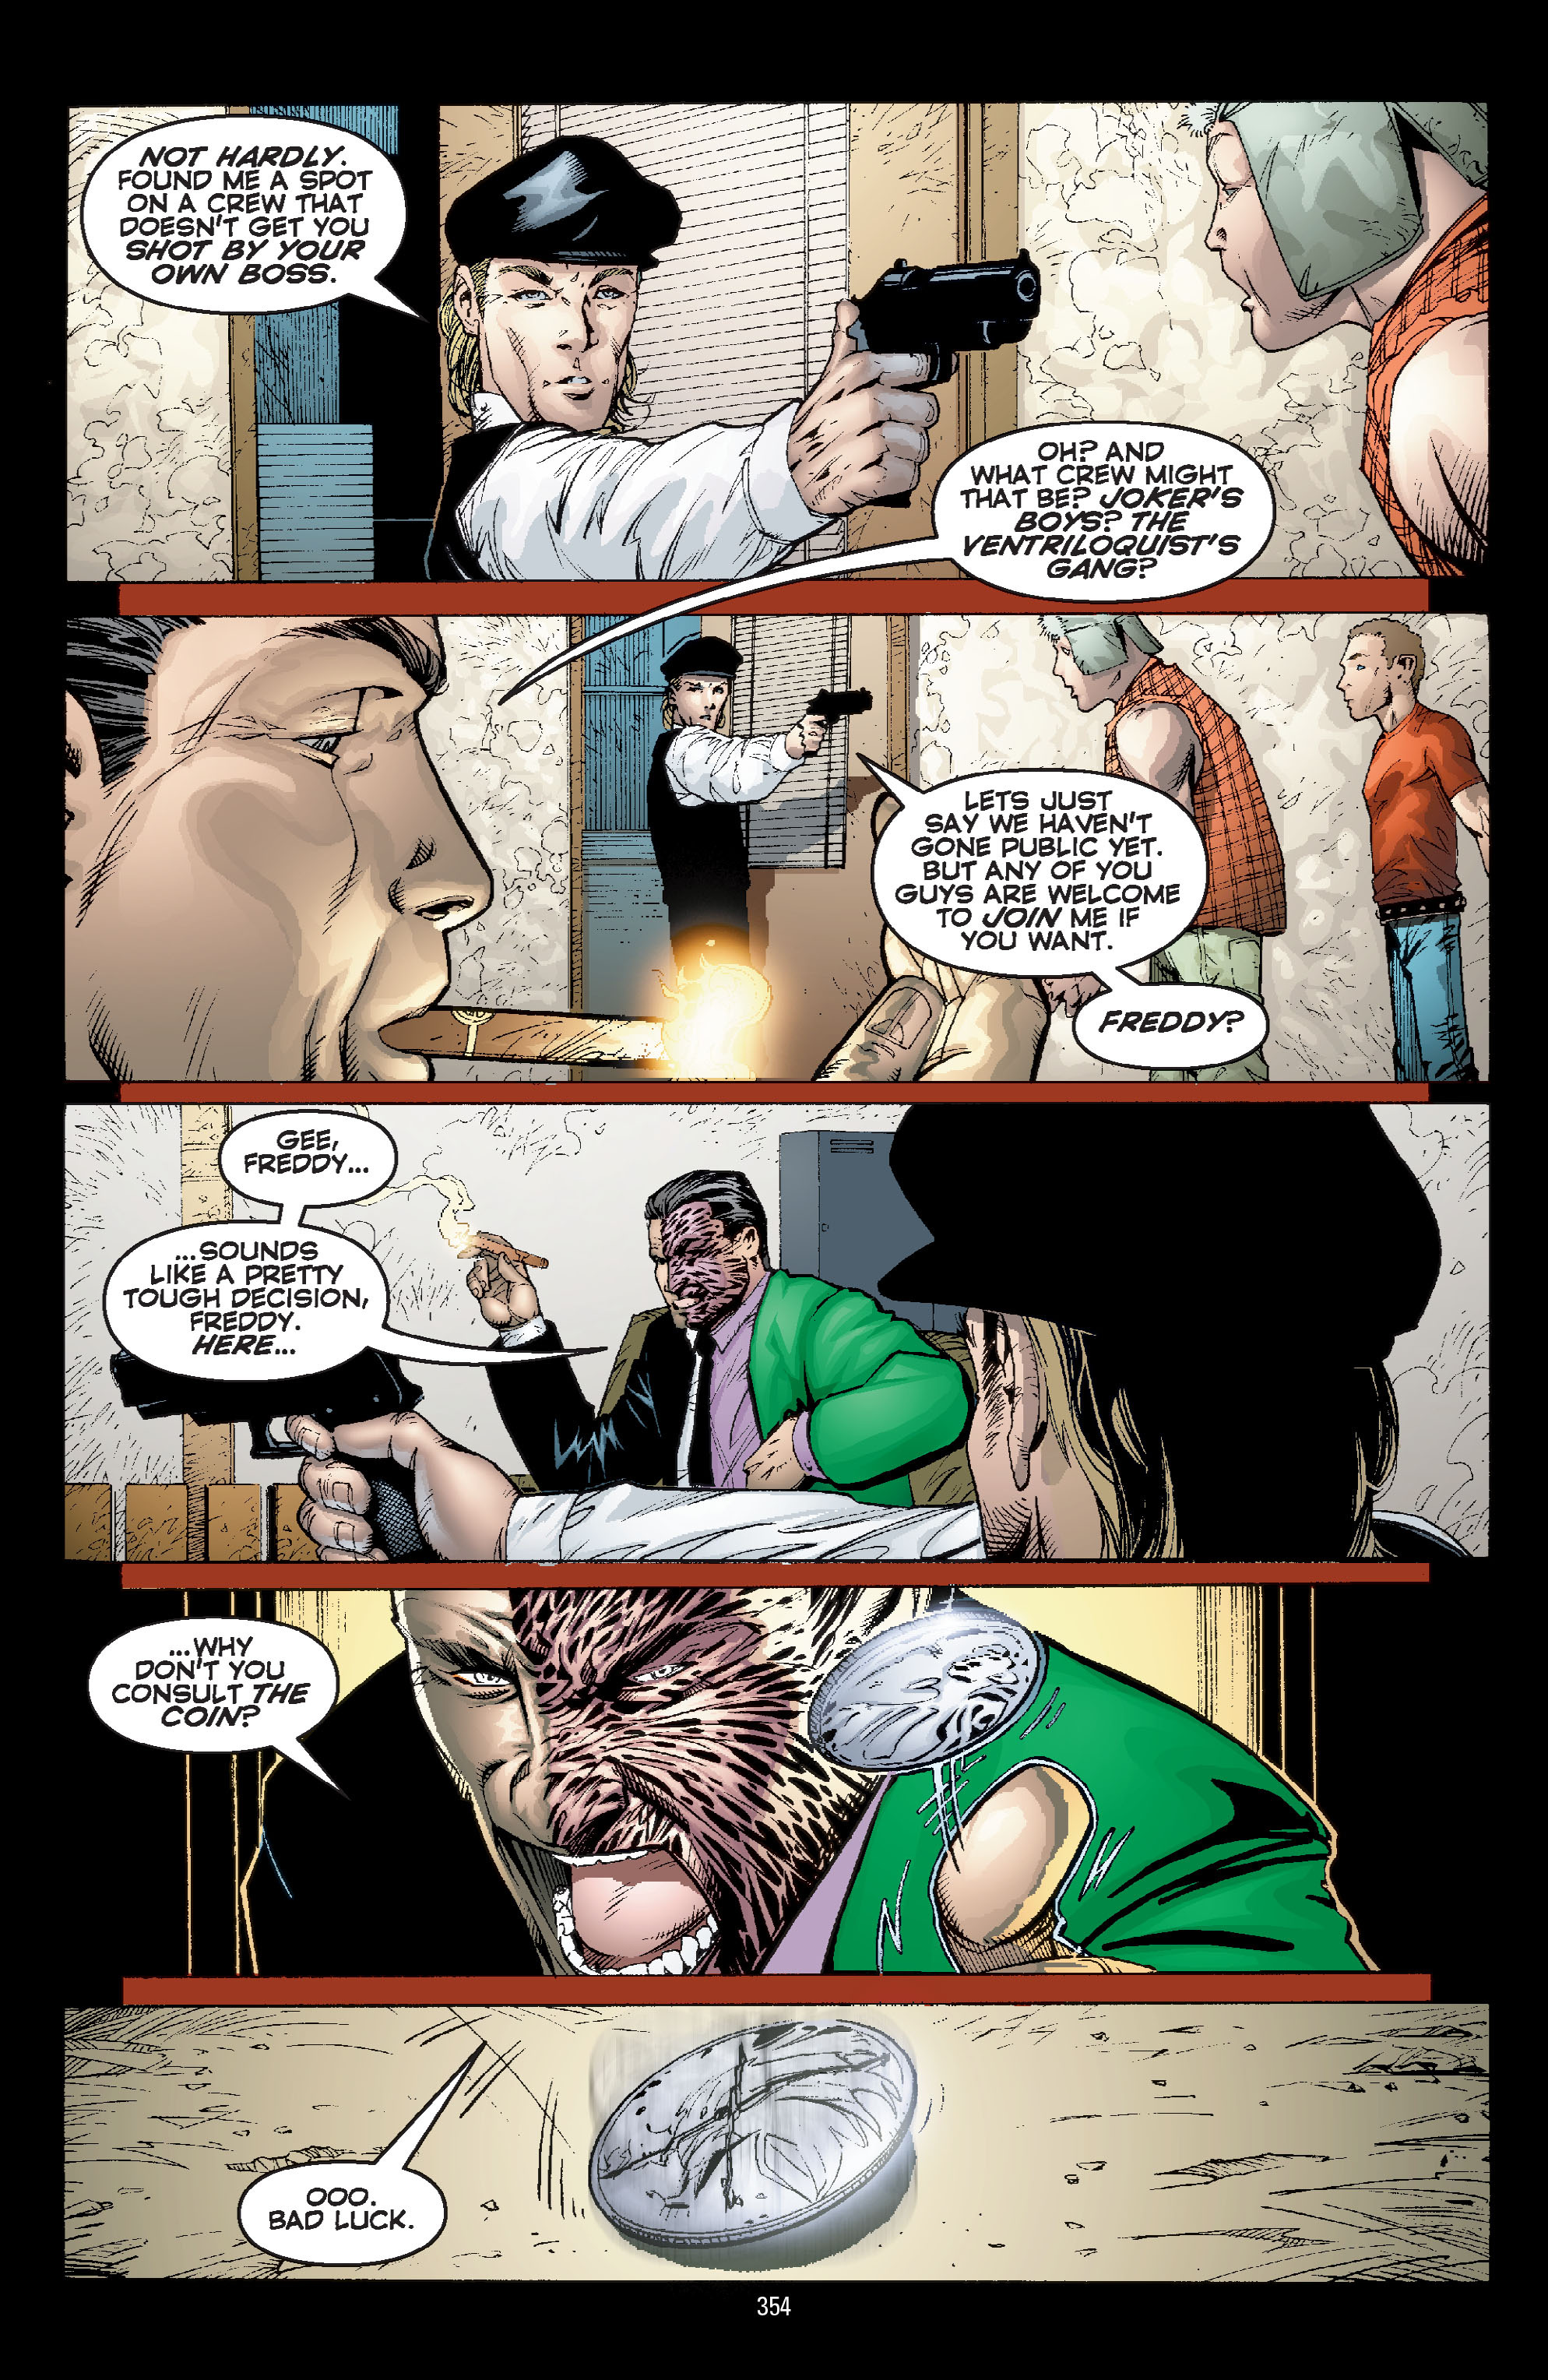 DC Comics/Dark Horse Comics: Justice League Full #1 - English 344